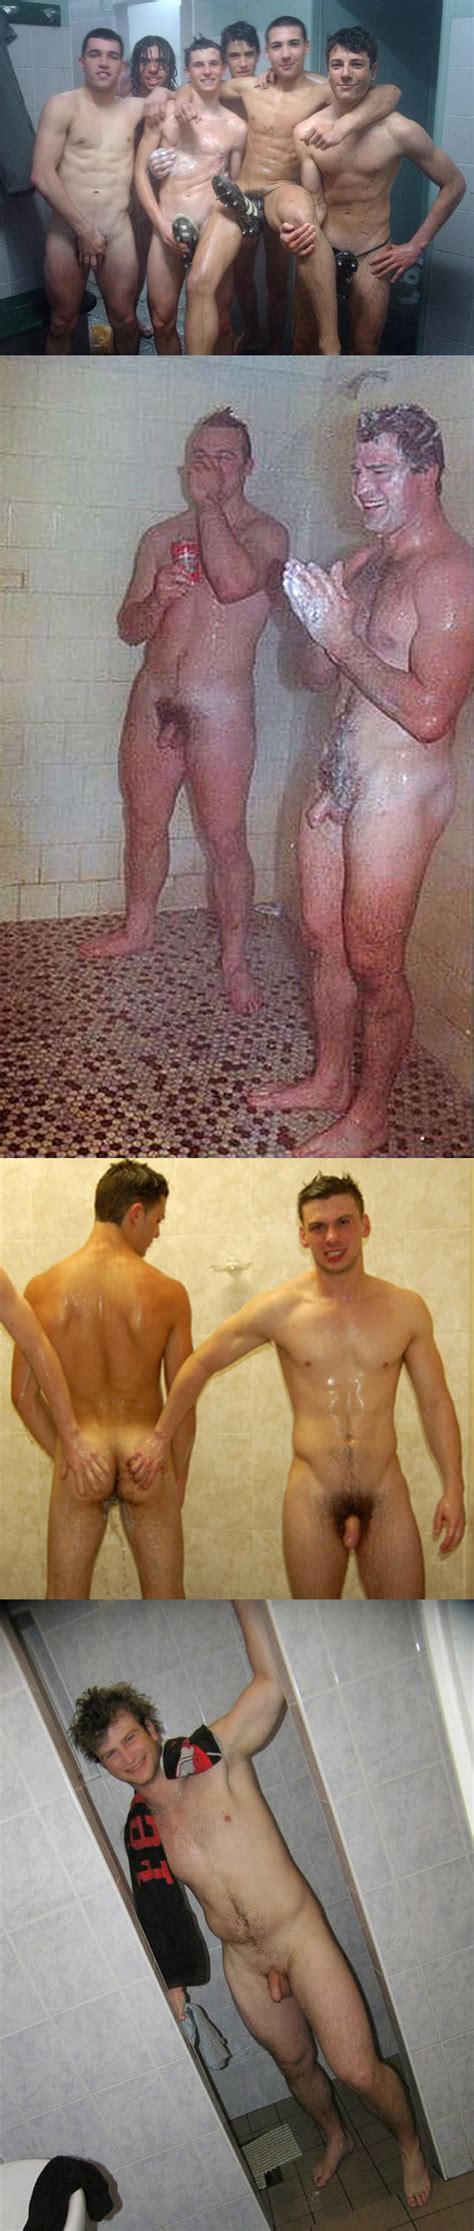 Spy Into Naked Sportsmen Shower Celebration Spycamfromguys Hidden